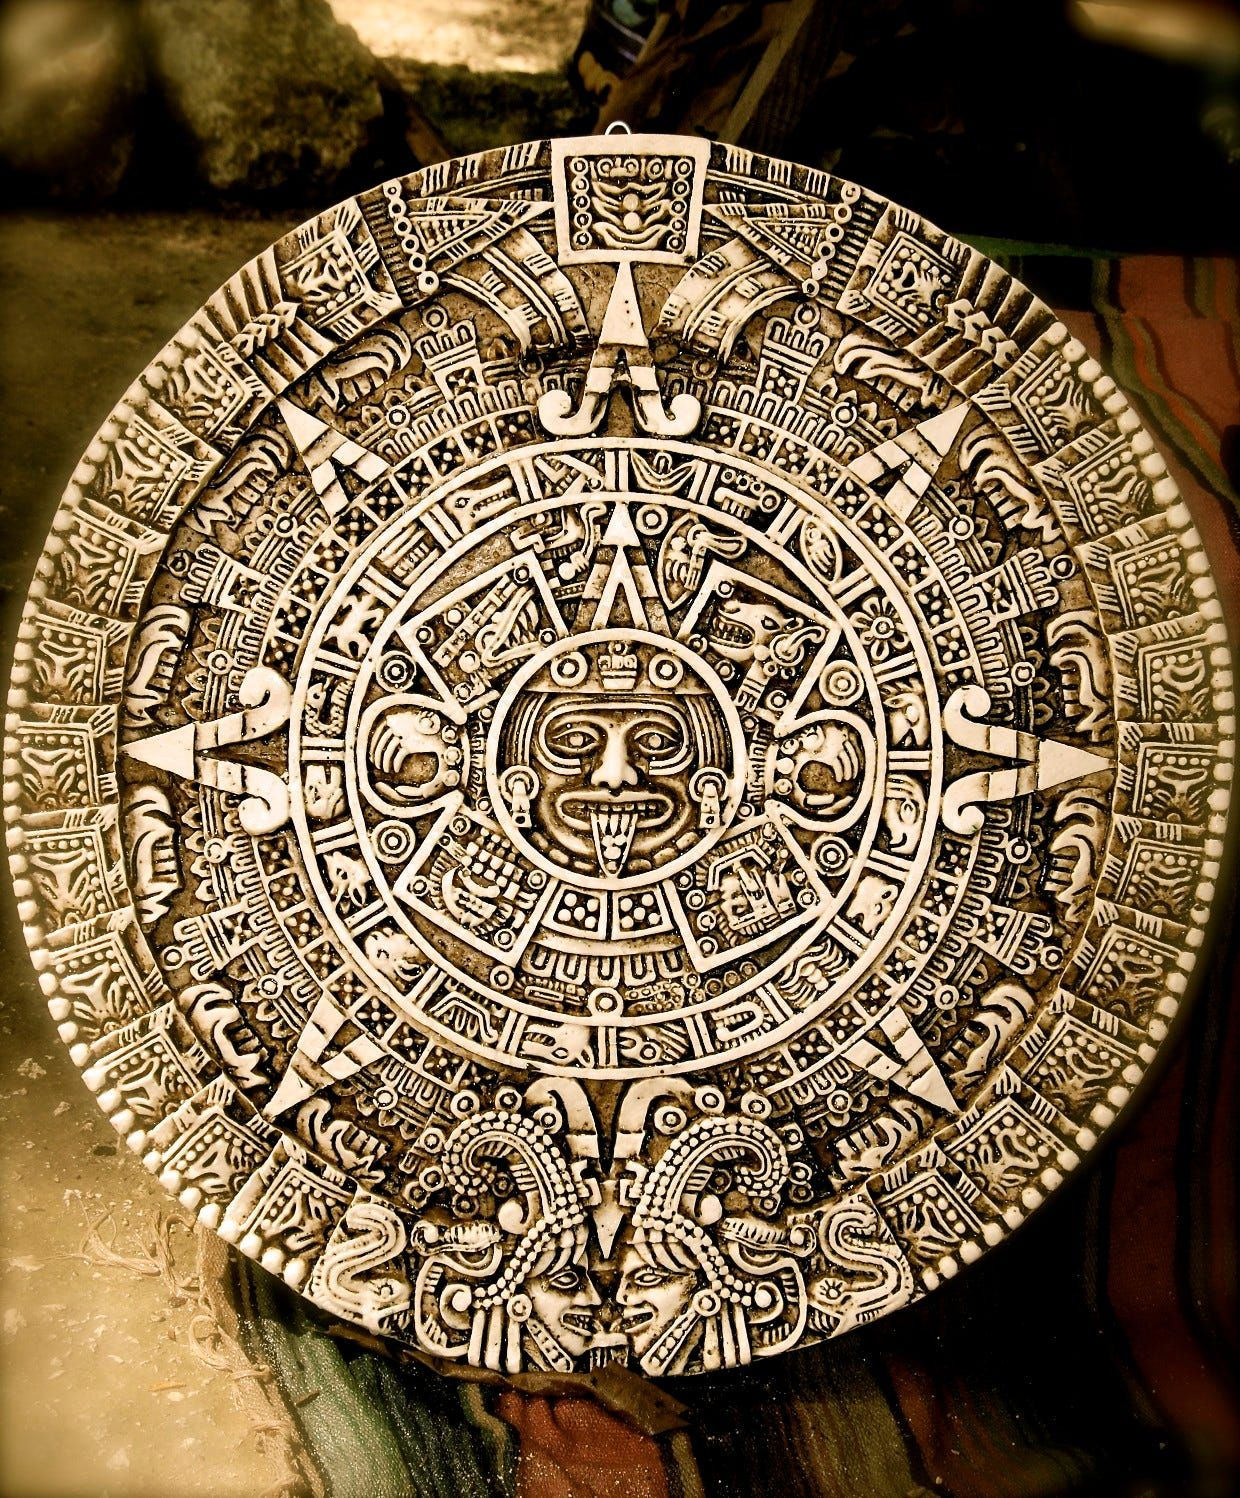 The Mayan Calendar That Ends Dec 21 2012 Mayan Art